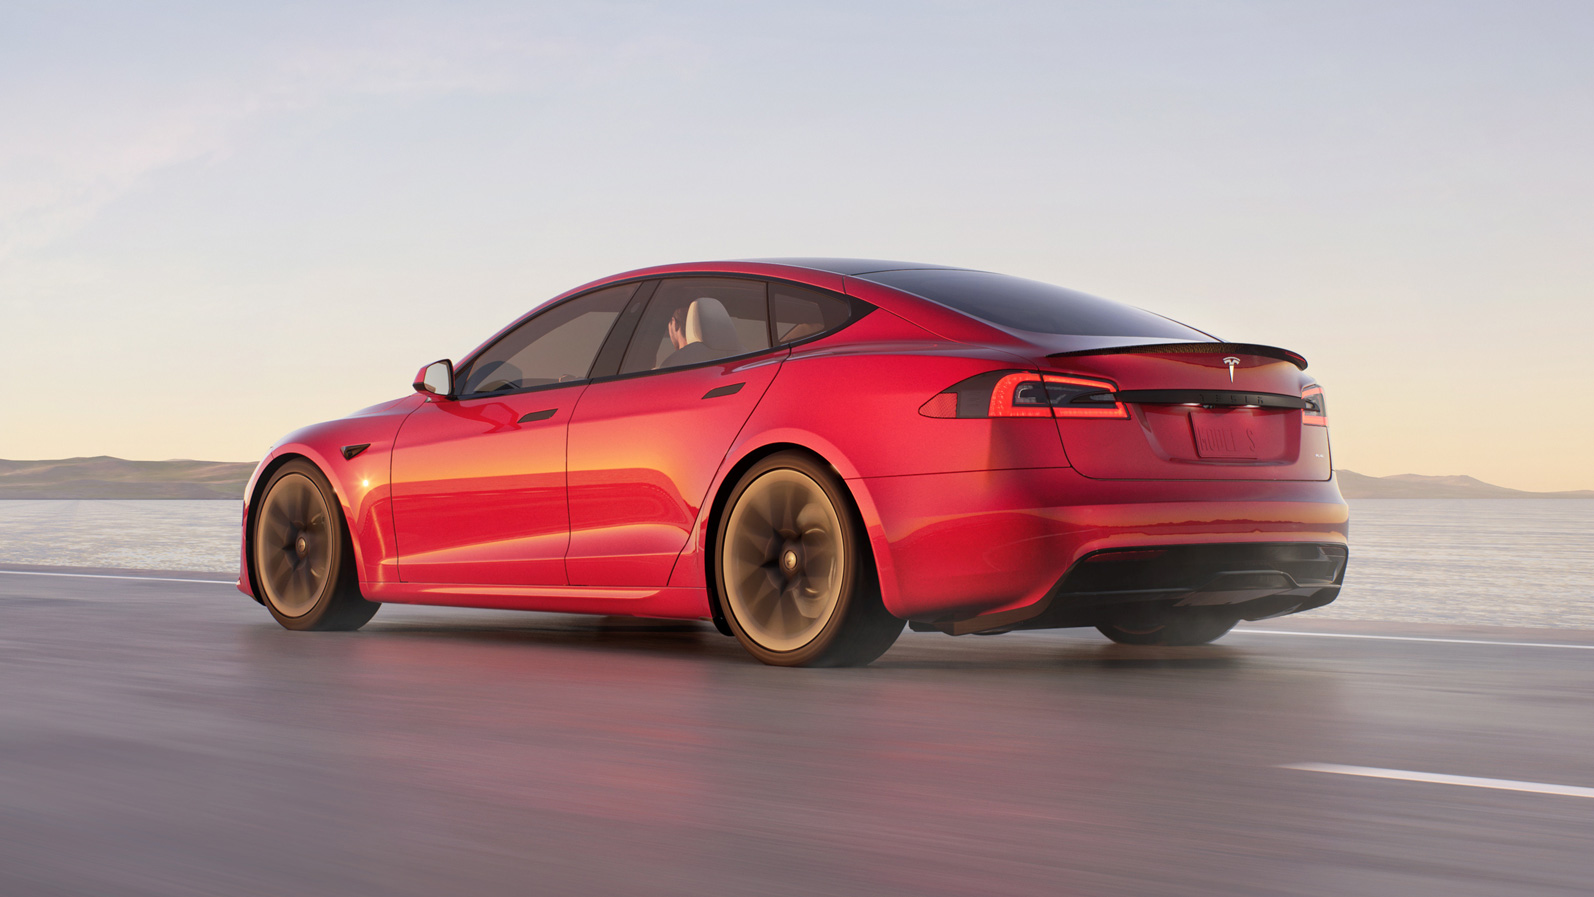 Es ist offiziell: Autopilot nicht verantwortlich für tödlichen Unfall mit Tesla Model S im Jahr 2021 - Unfall wurde durch zu schnelles Fahren verursacht